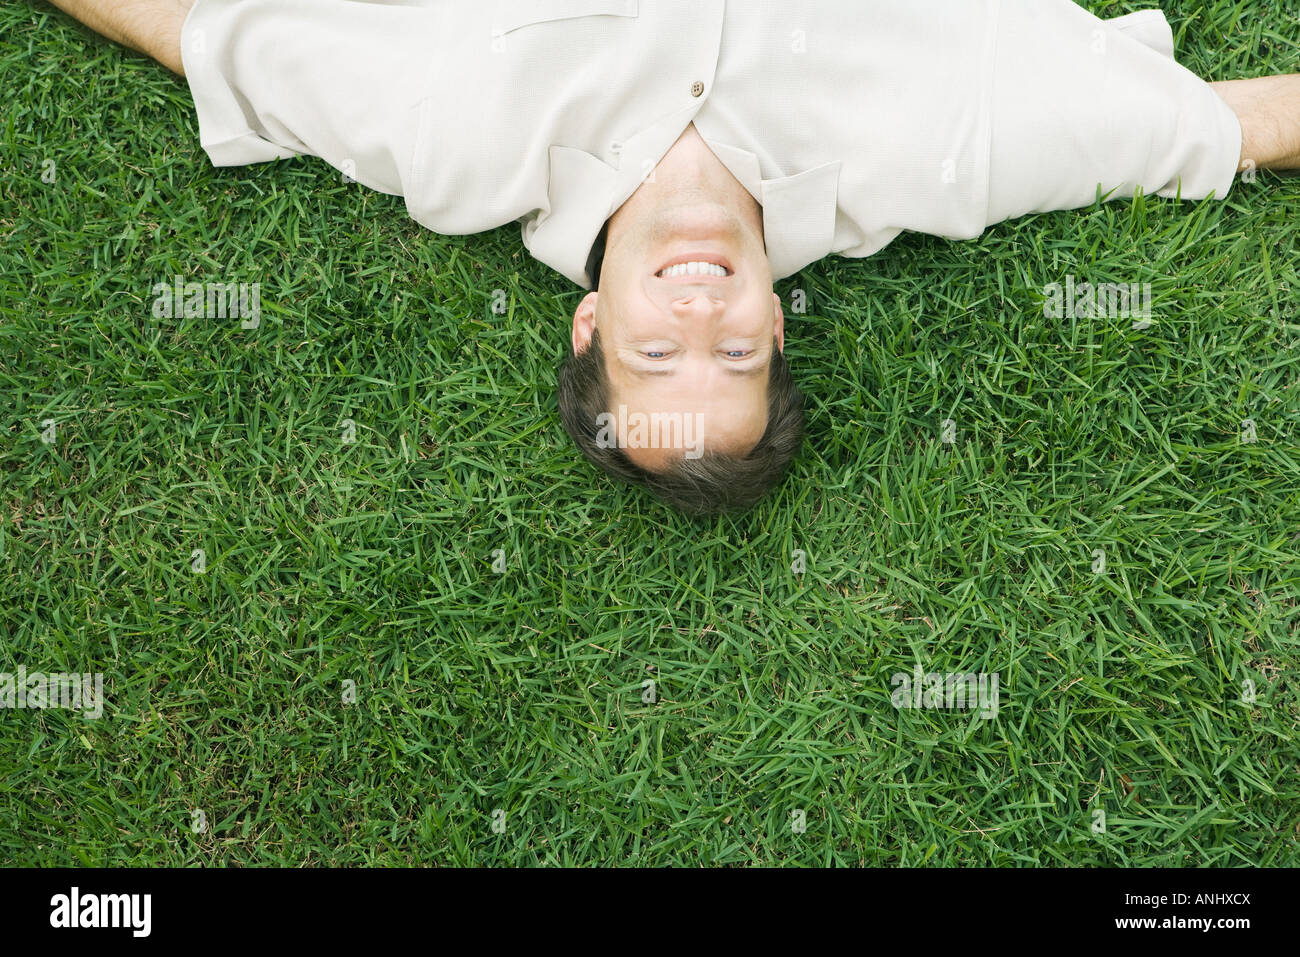 Homme couché à l'envers dans l'herbe, smiling at camera, portrait high angle view Banque D'Images